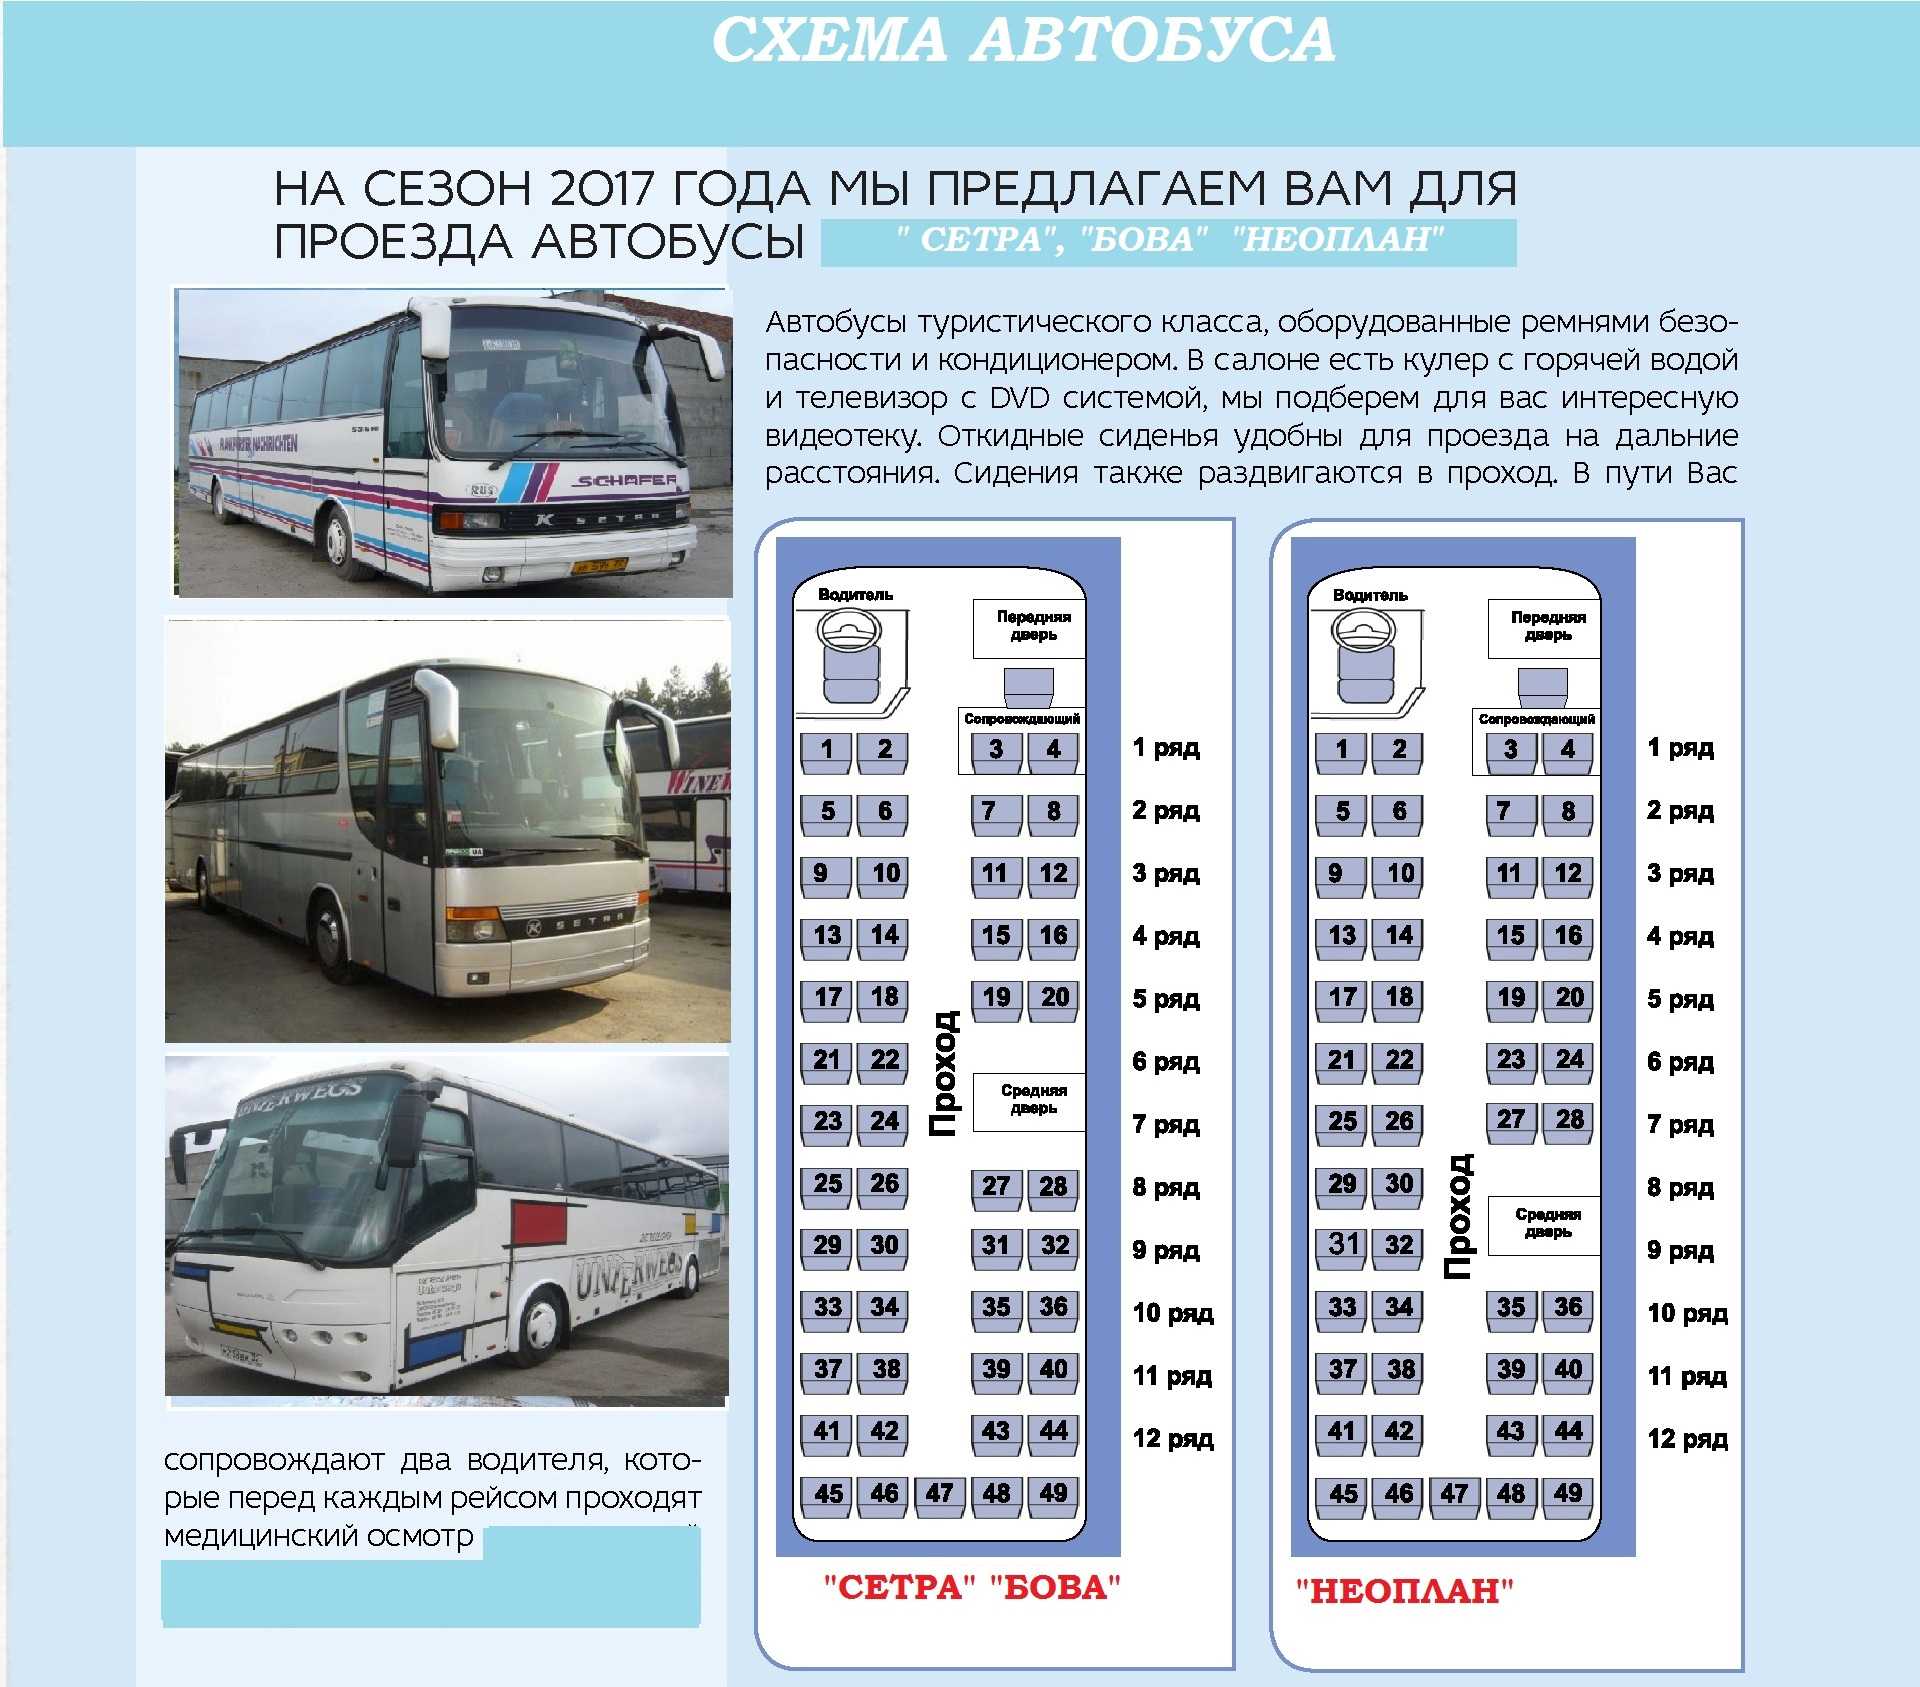 Автобусы и их основная классификация - perevozki-stolitsa.ru